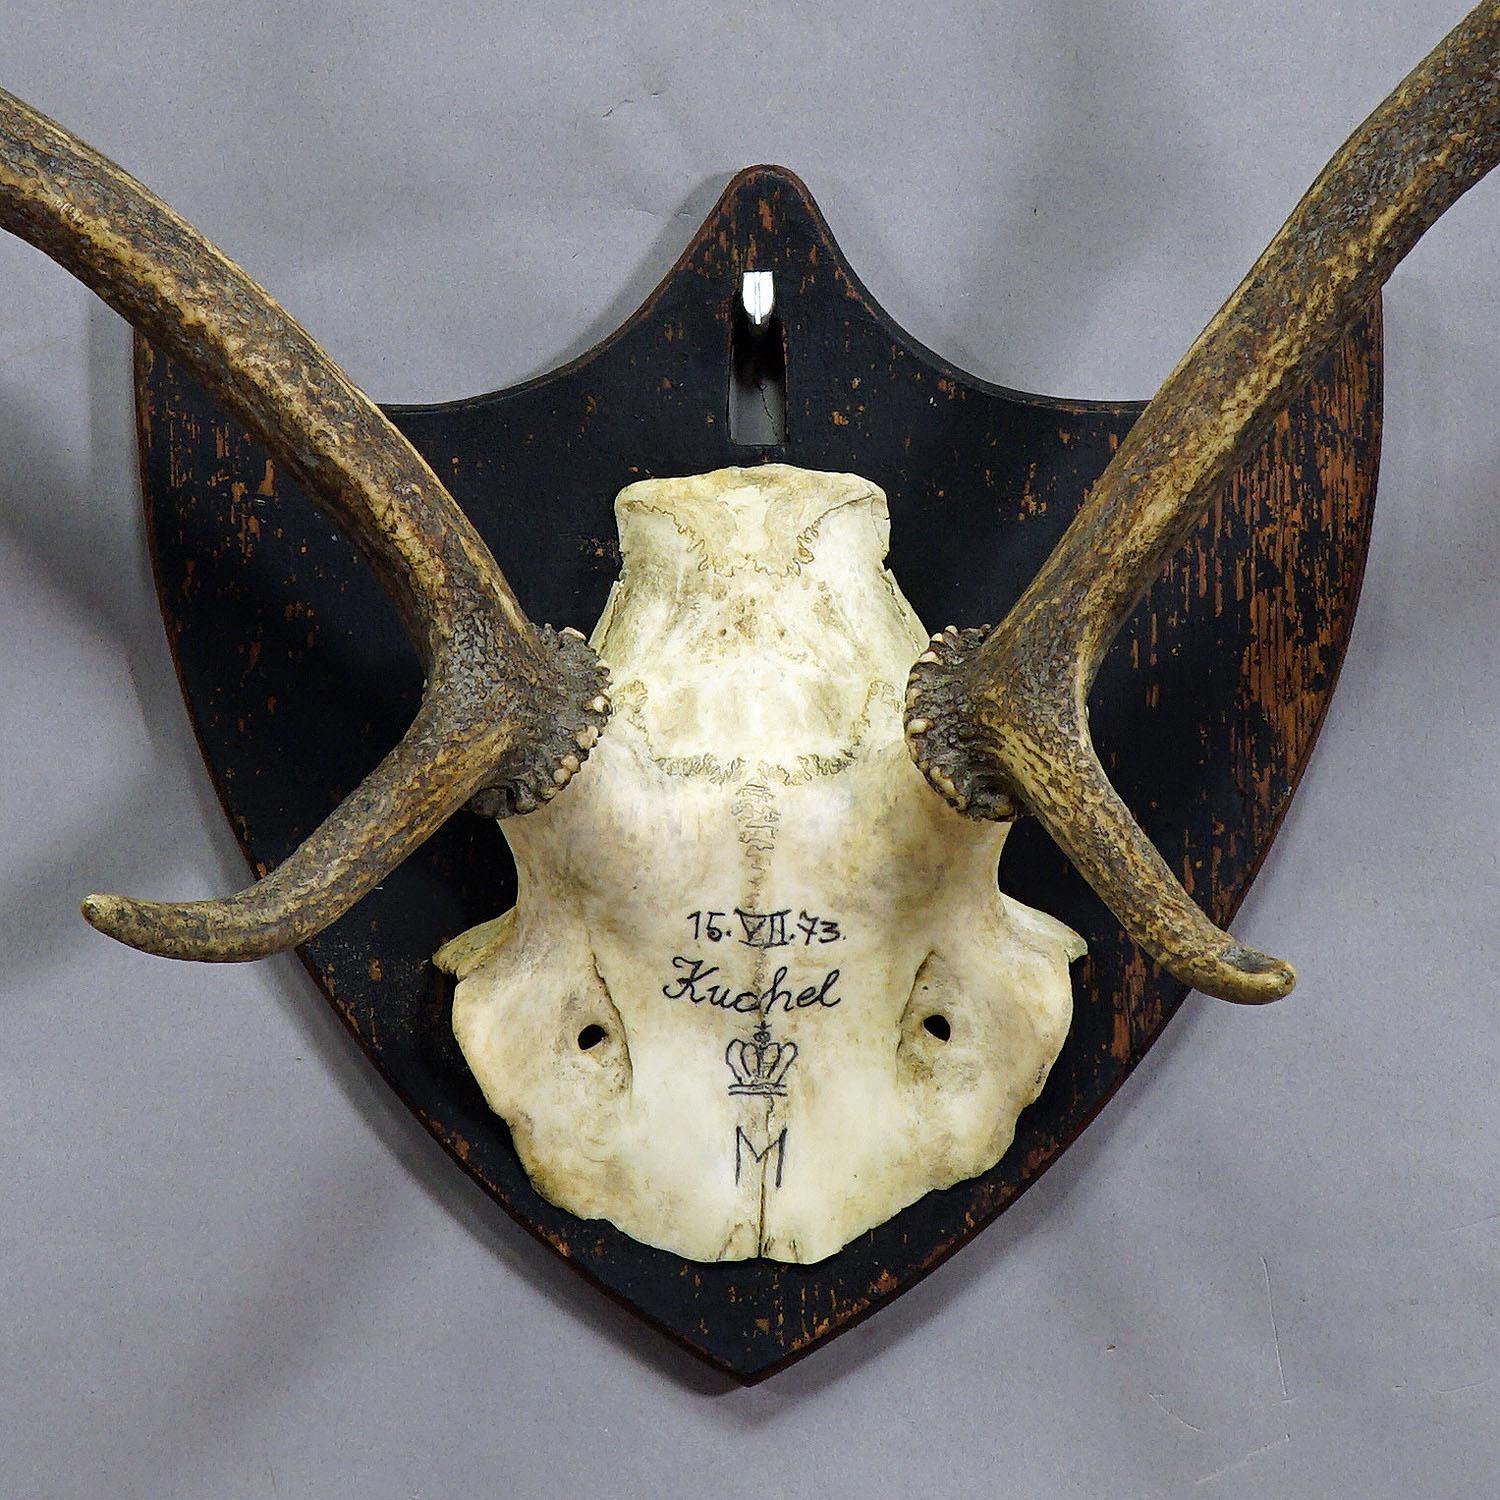 Rustic Antique Black Forest Deer Trophy from Salem - Germany, Kuchel 1873